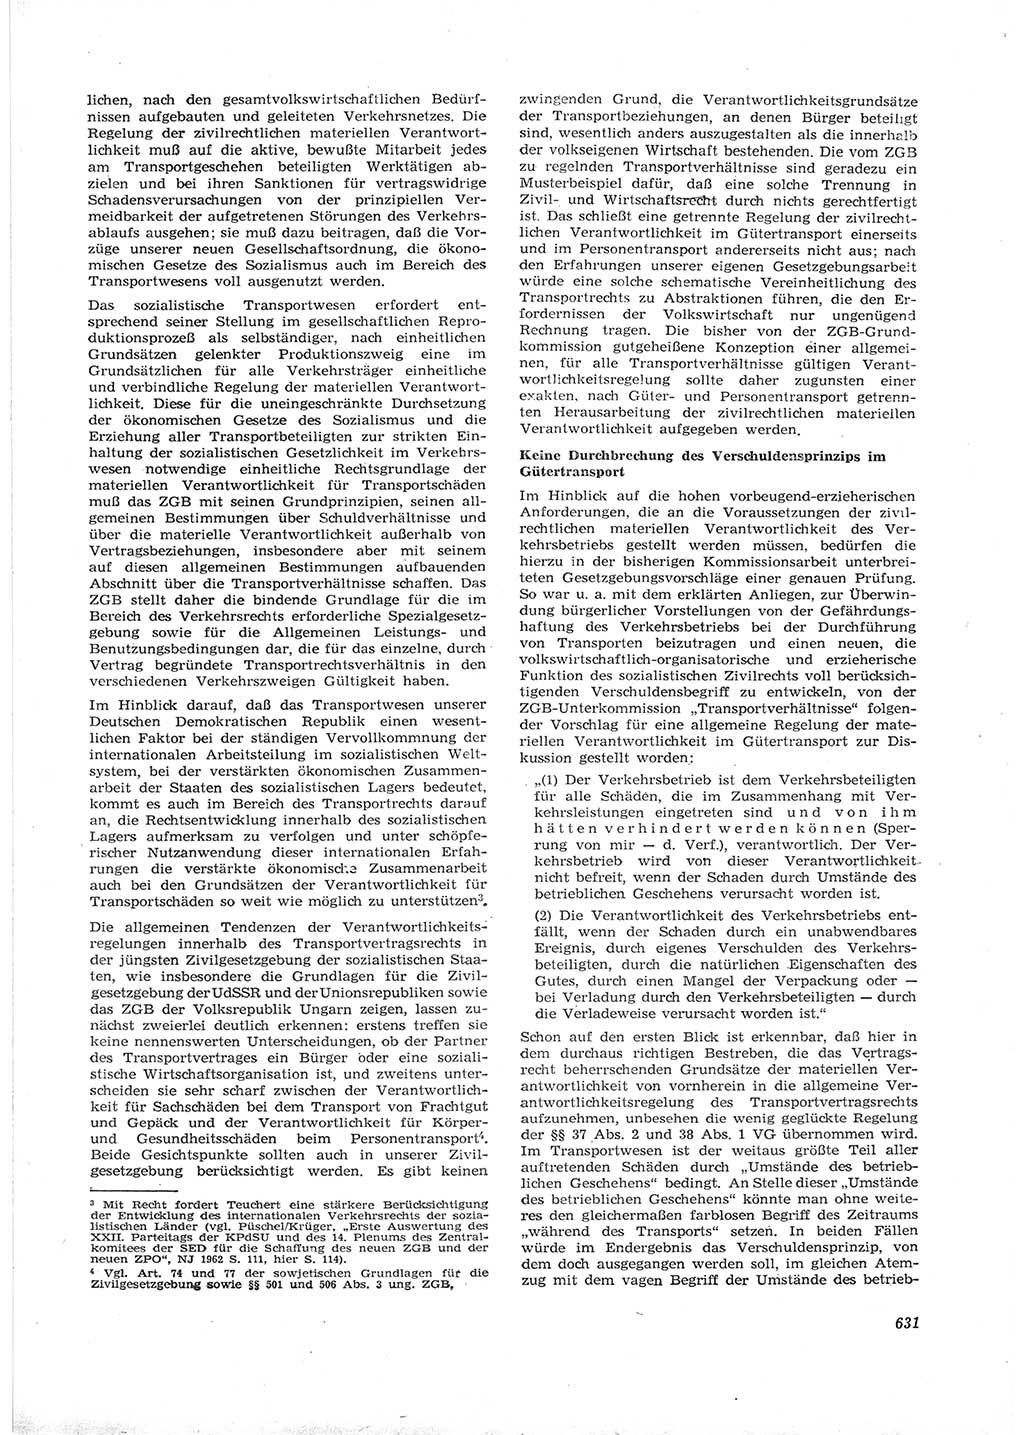 Neue Justiz (NJ), Zeitschrift für Recht und Rechtswissenschaft [Deutsche Demokratische Republik (DDR)], 16. Jahrgang 1962, Seite 631 (NJ DDR 1962, S. 631)